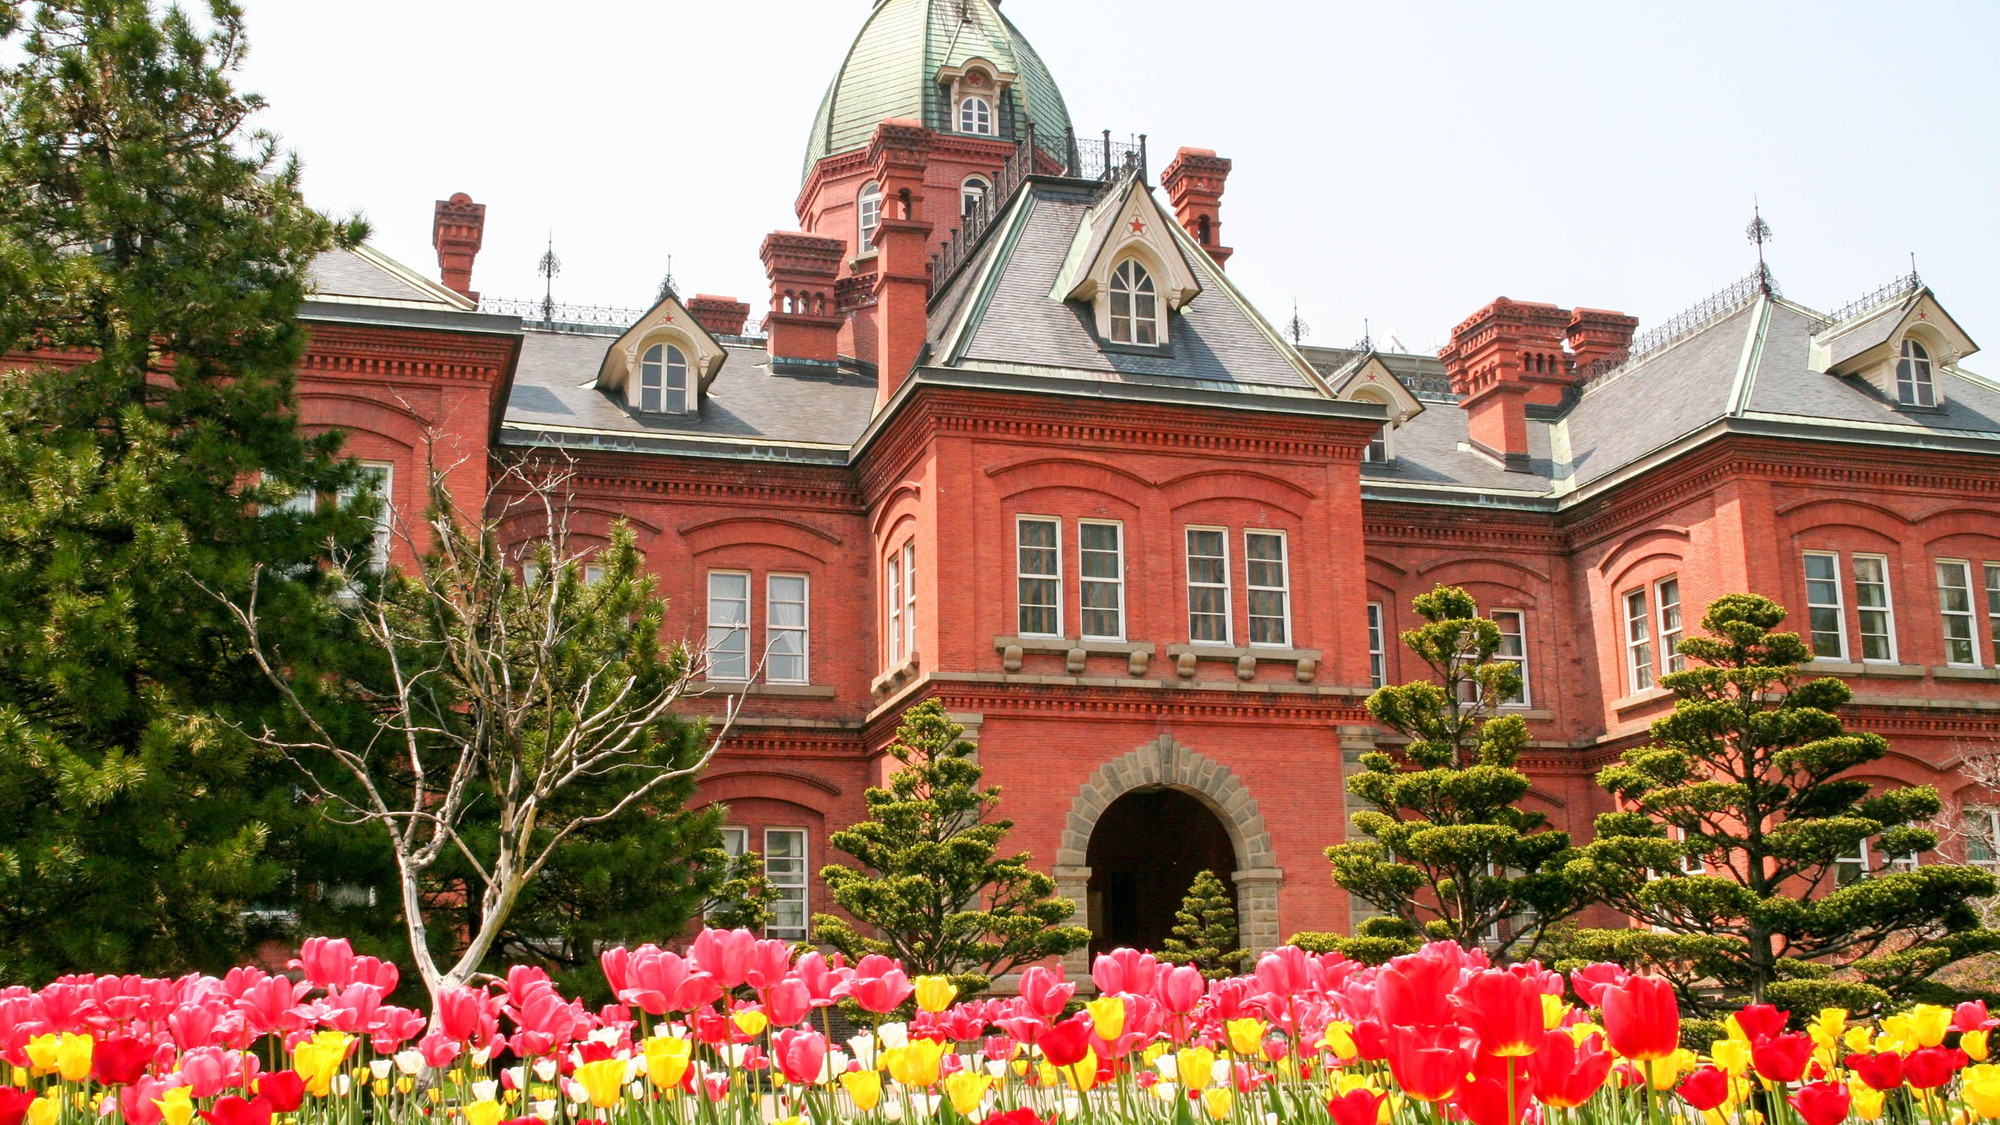 【赤れんが庁舎】ホテルから徒歩約15分。館内は一般に無料公開され、北海道の歴史をたどる資料を展示。